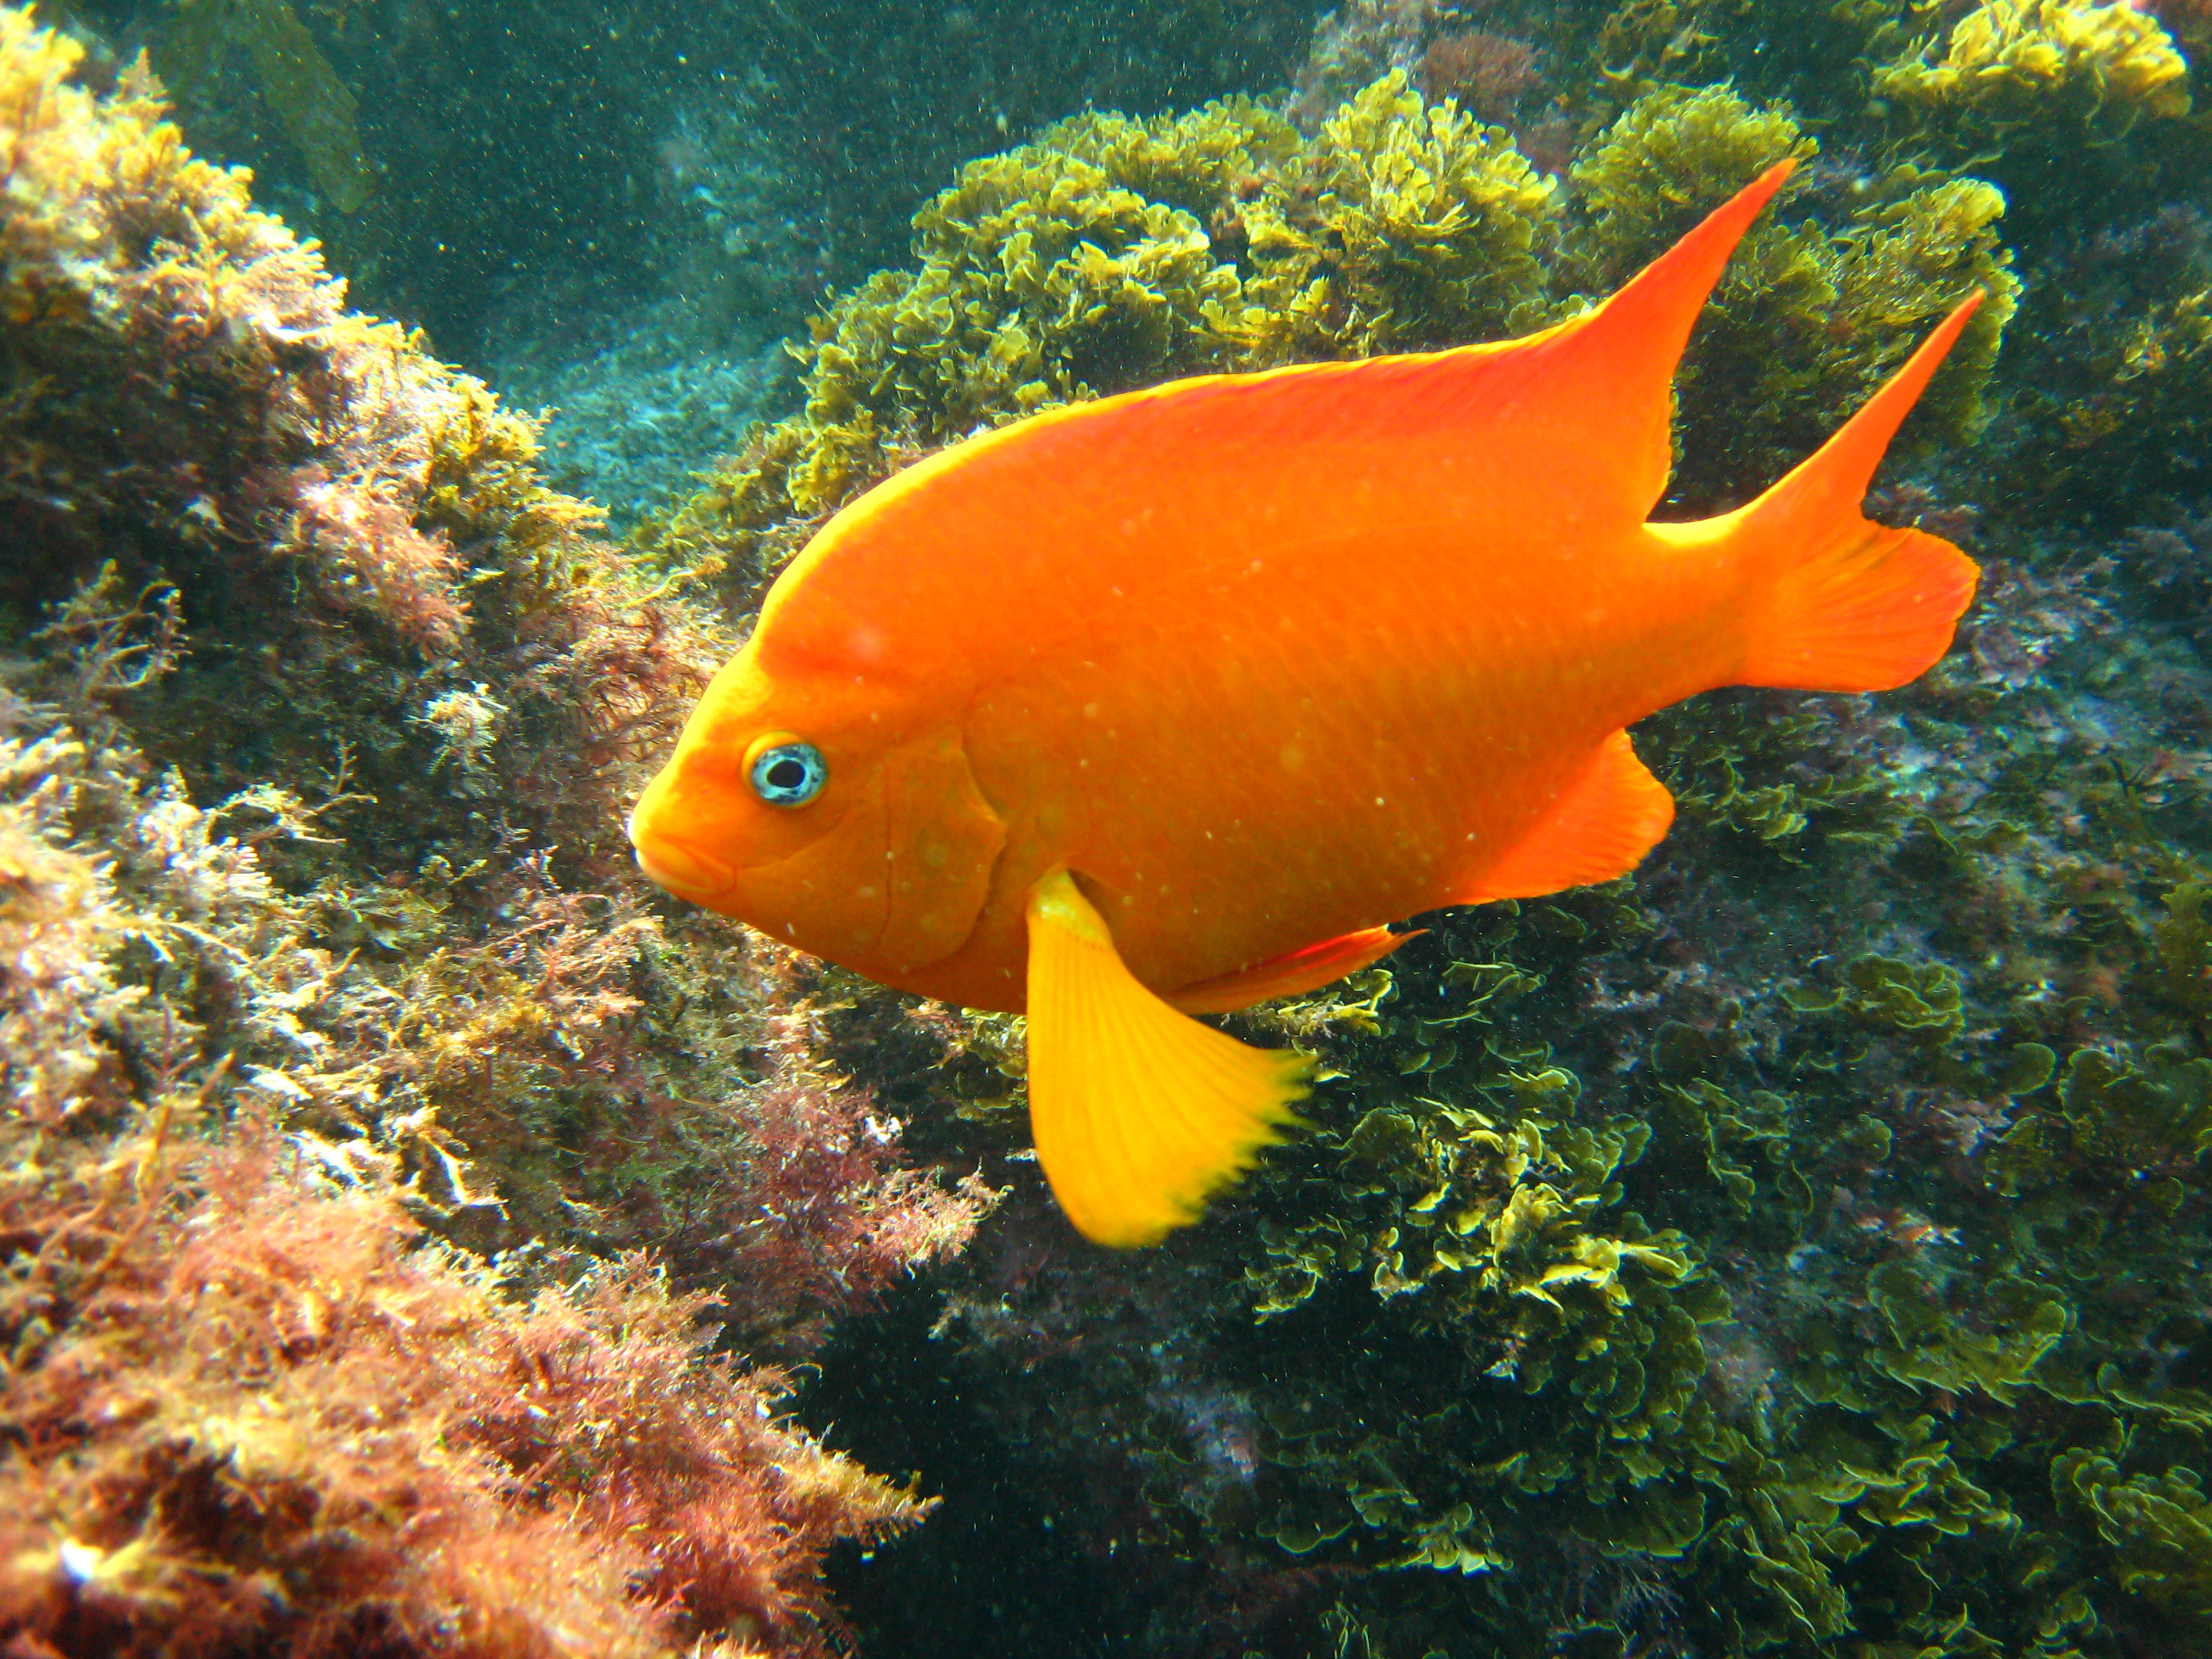 File:Garibaldi fish.jpg - Wikimedia Commons